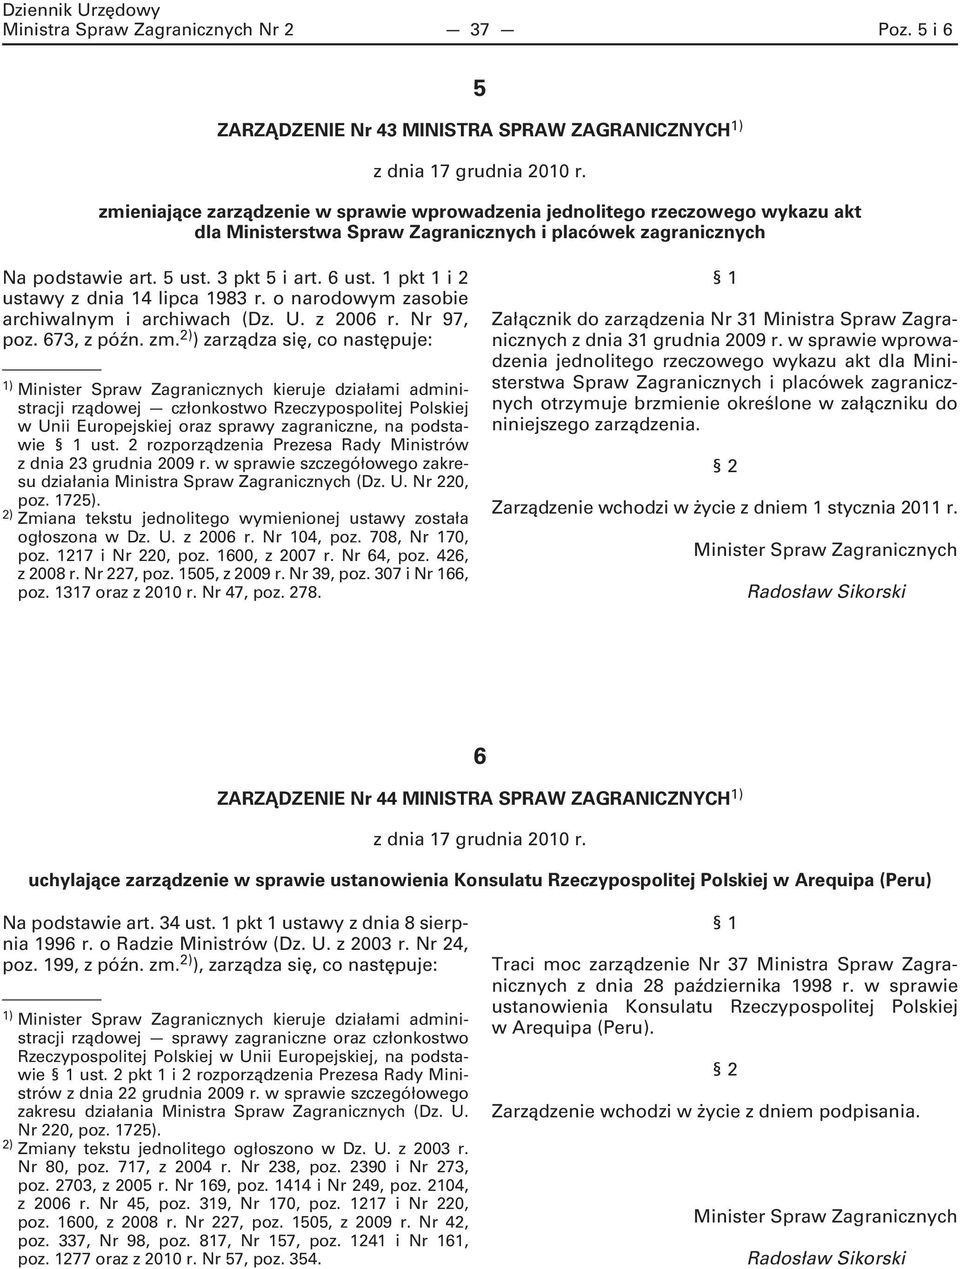 1 pkt 1 i 2 ustawy z dnia 14 lipca 1983 r. o narodowym zasobie archiwalnym i archiwach (Dz. U. z 2006 r. Nr 97, poz. 673, z późn. zm.